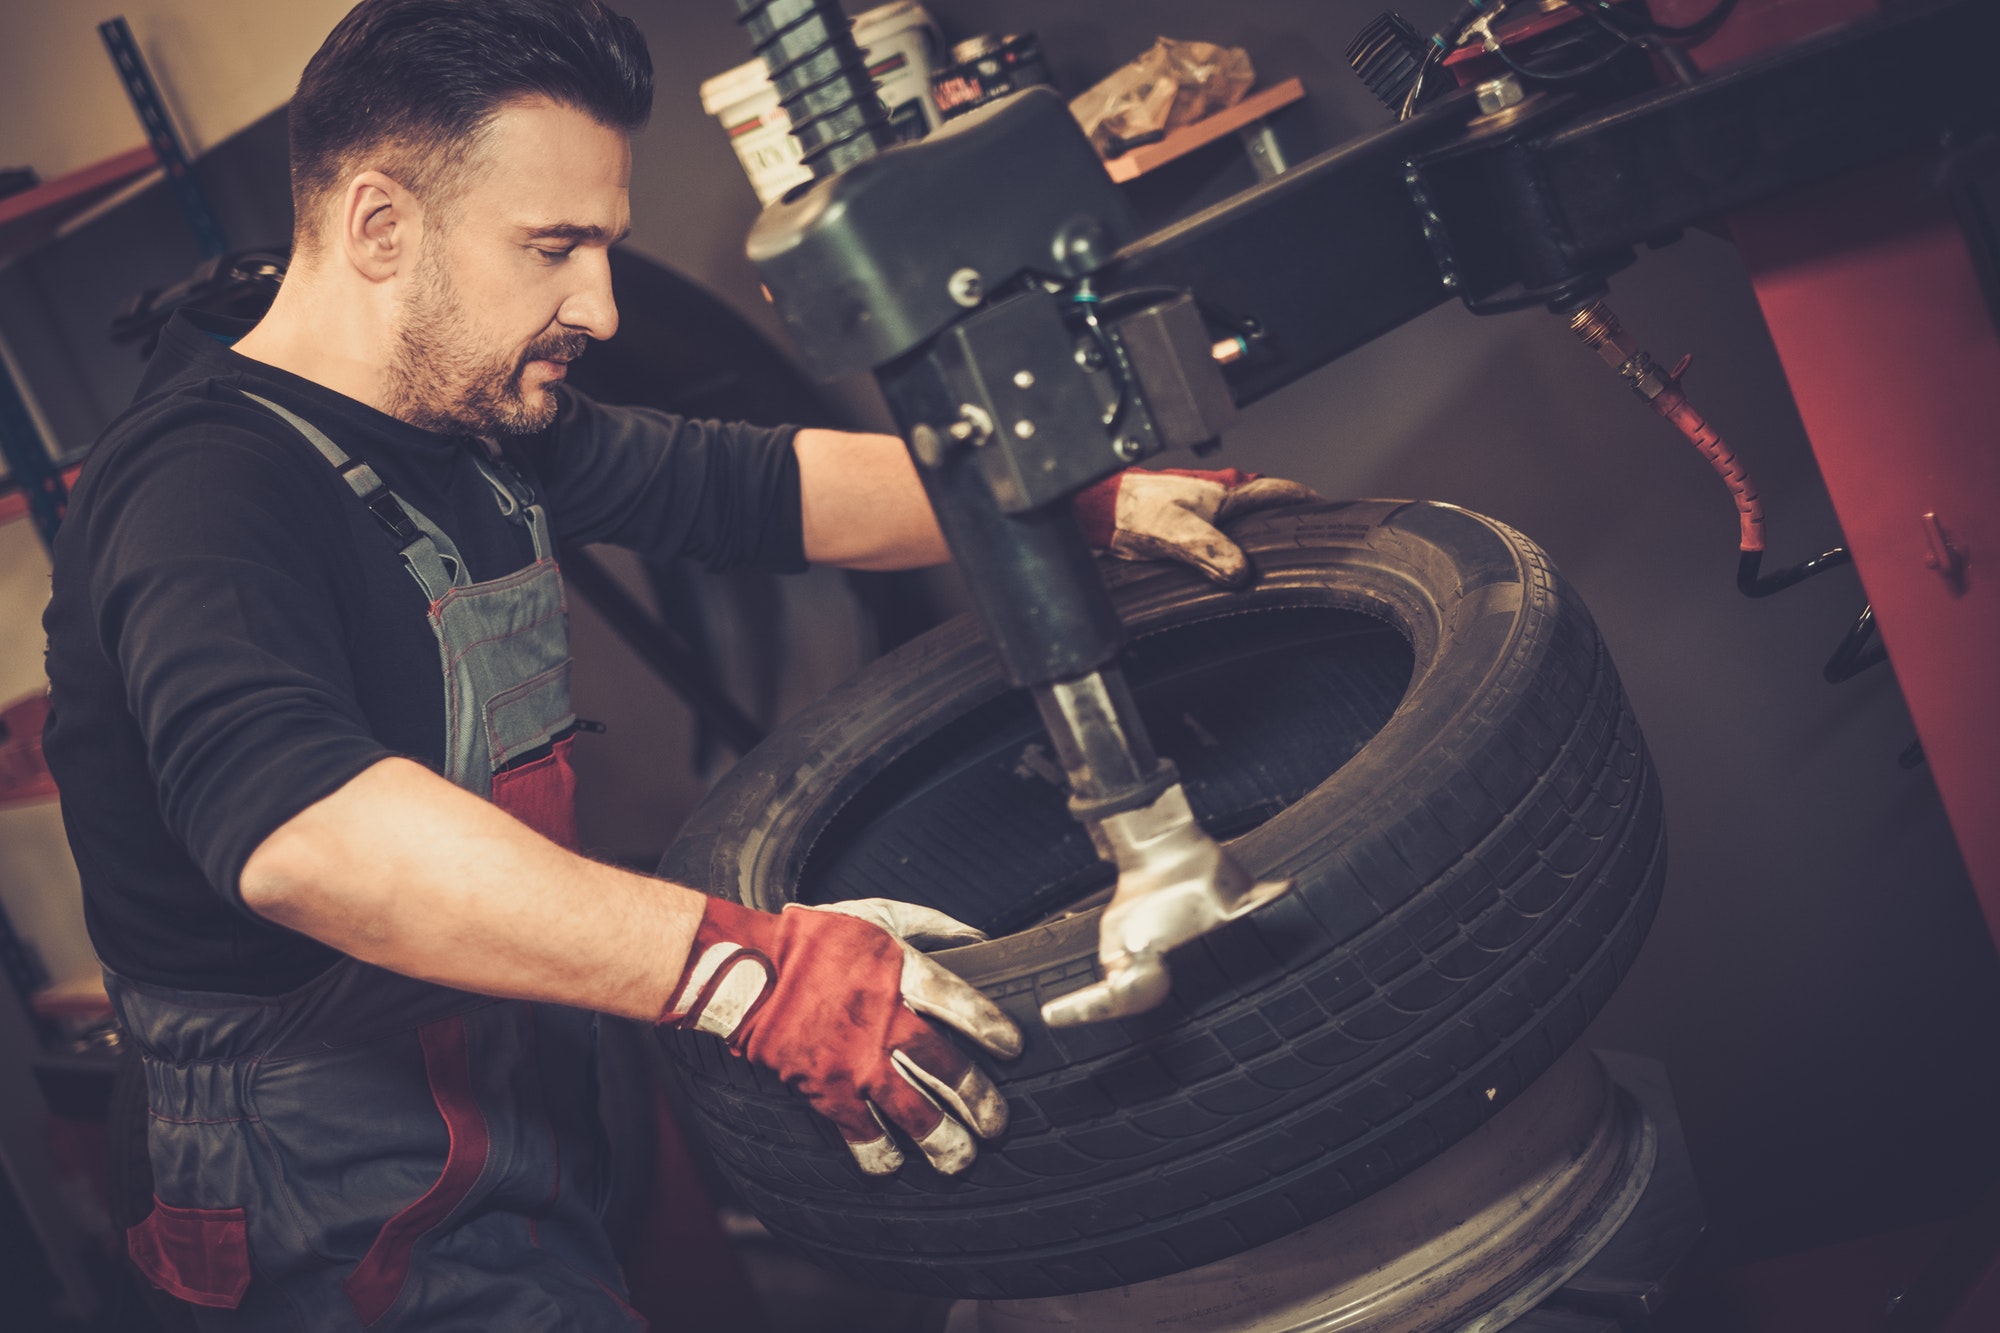 Un démonte pneu manuel est particulièrement utile dans les situations où l'équipement automatisé n'est pas disponible ou pratique.